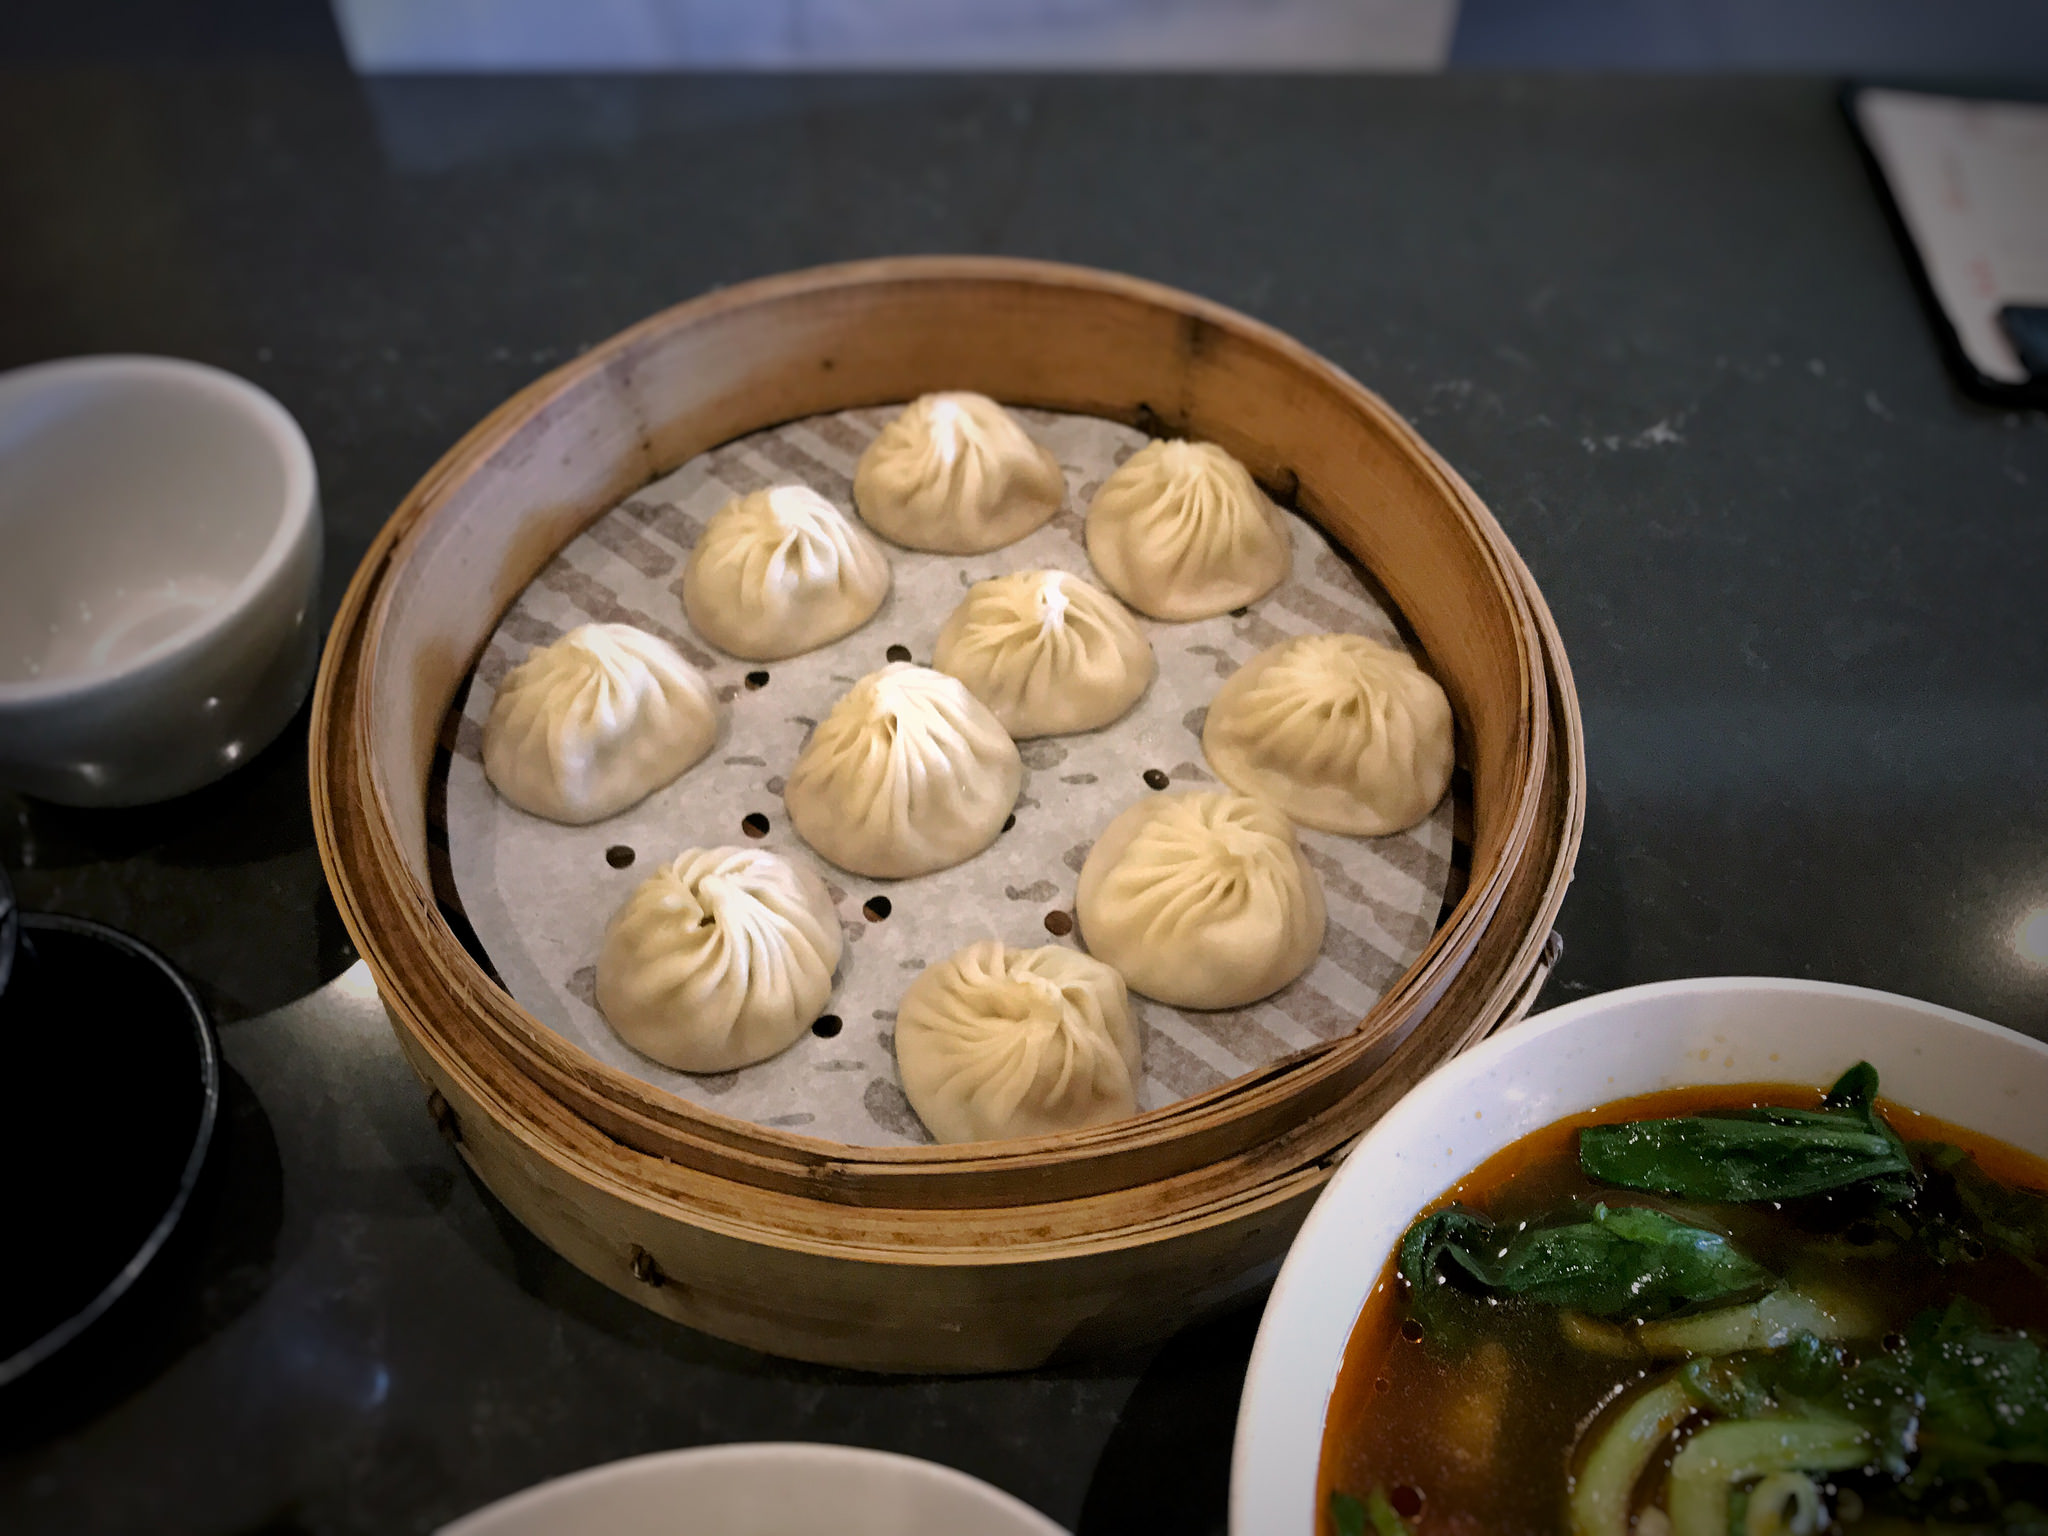 Din Tai Fung xiao long bao soup dumplings.